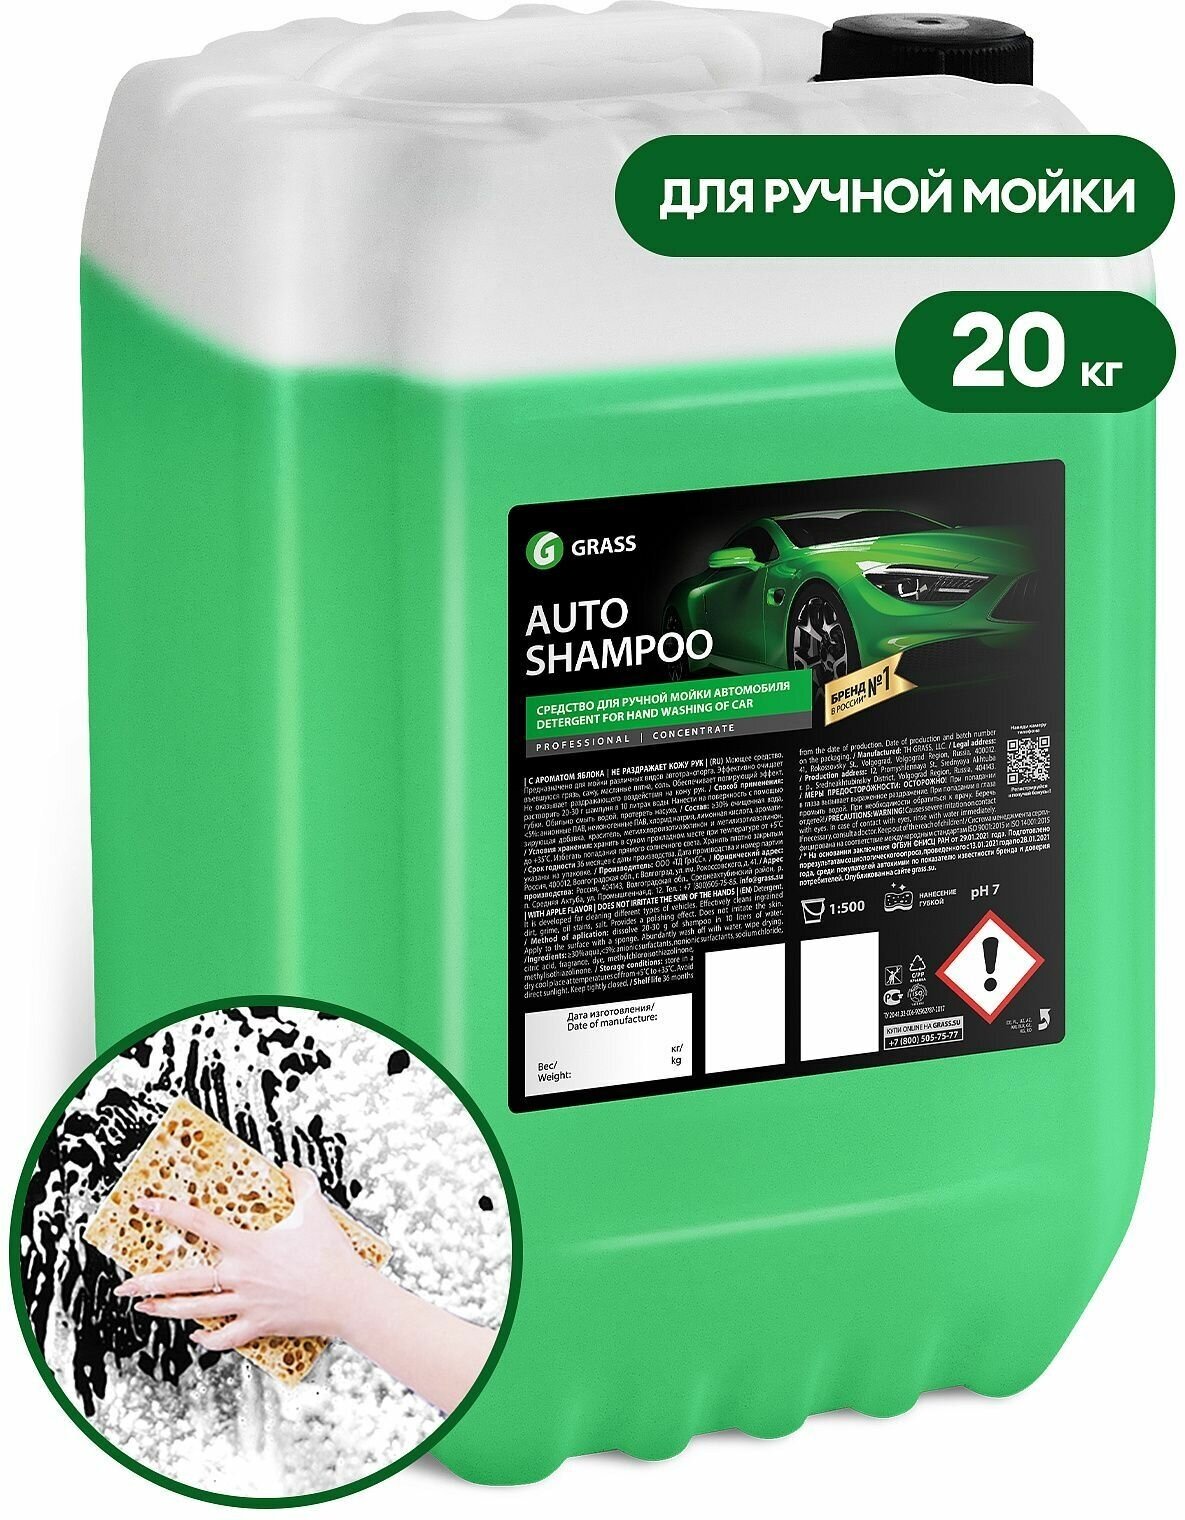 Grass Автошампунь для ручной мойки Auto Shampoo